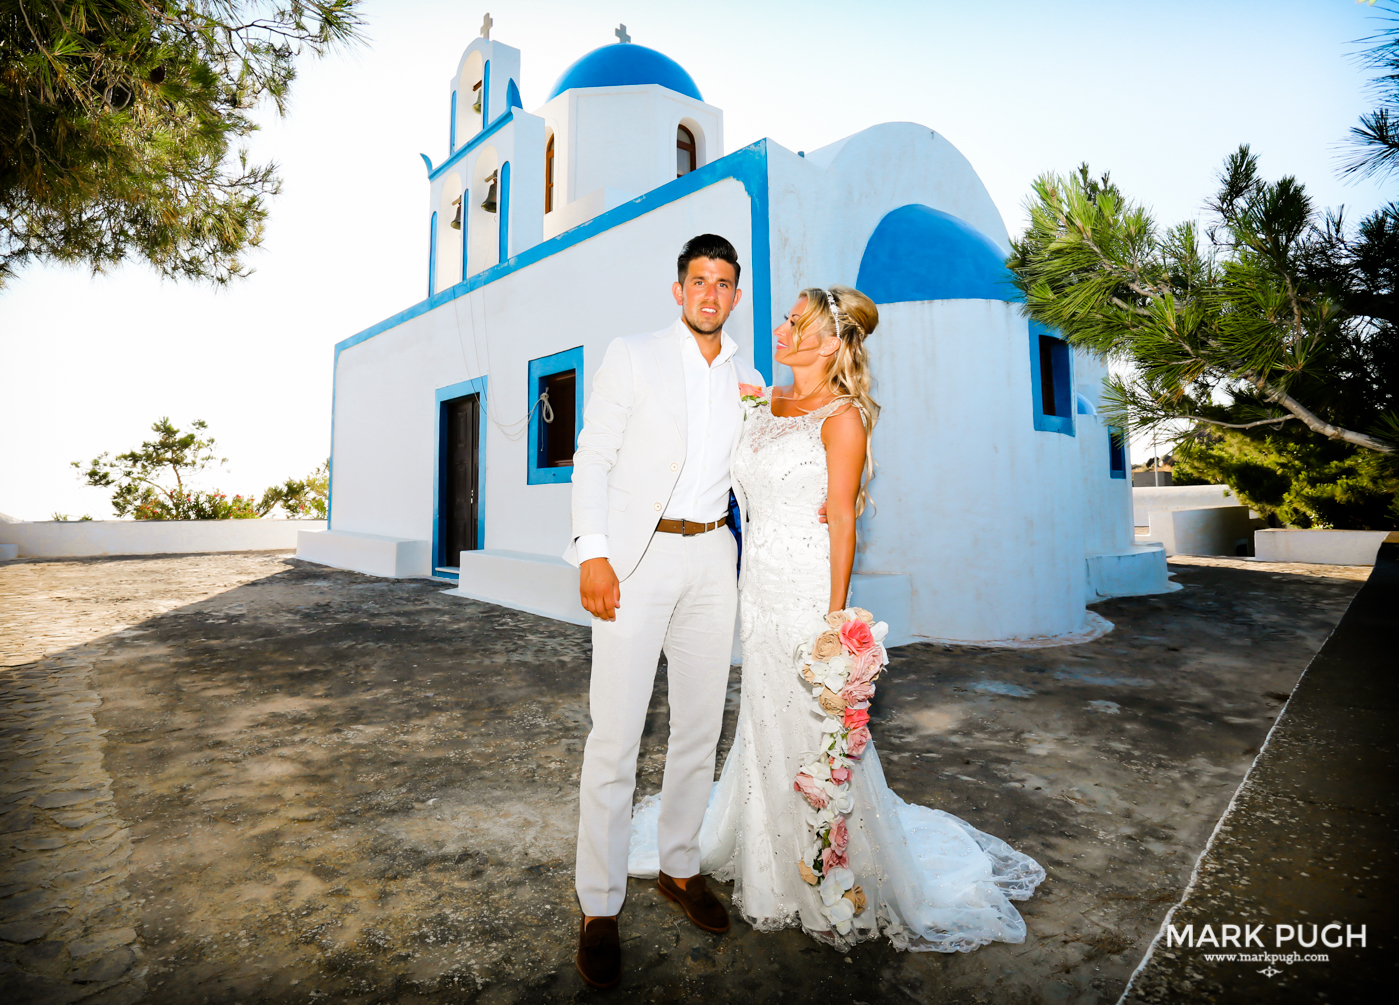 066 - Kerry and Lee - Destination Wedding in Santorini by www.markpugh.com -0778.JPG